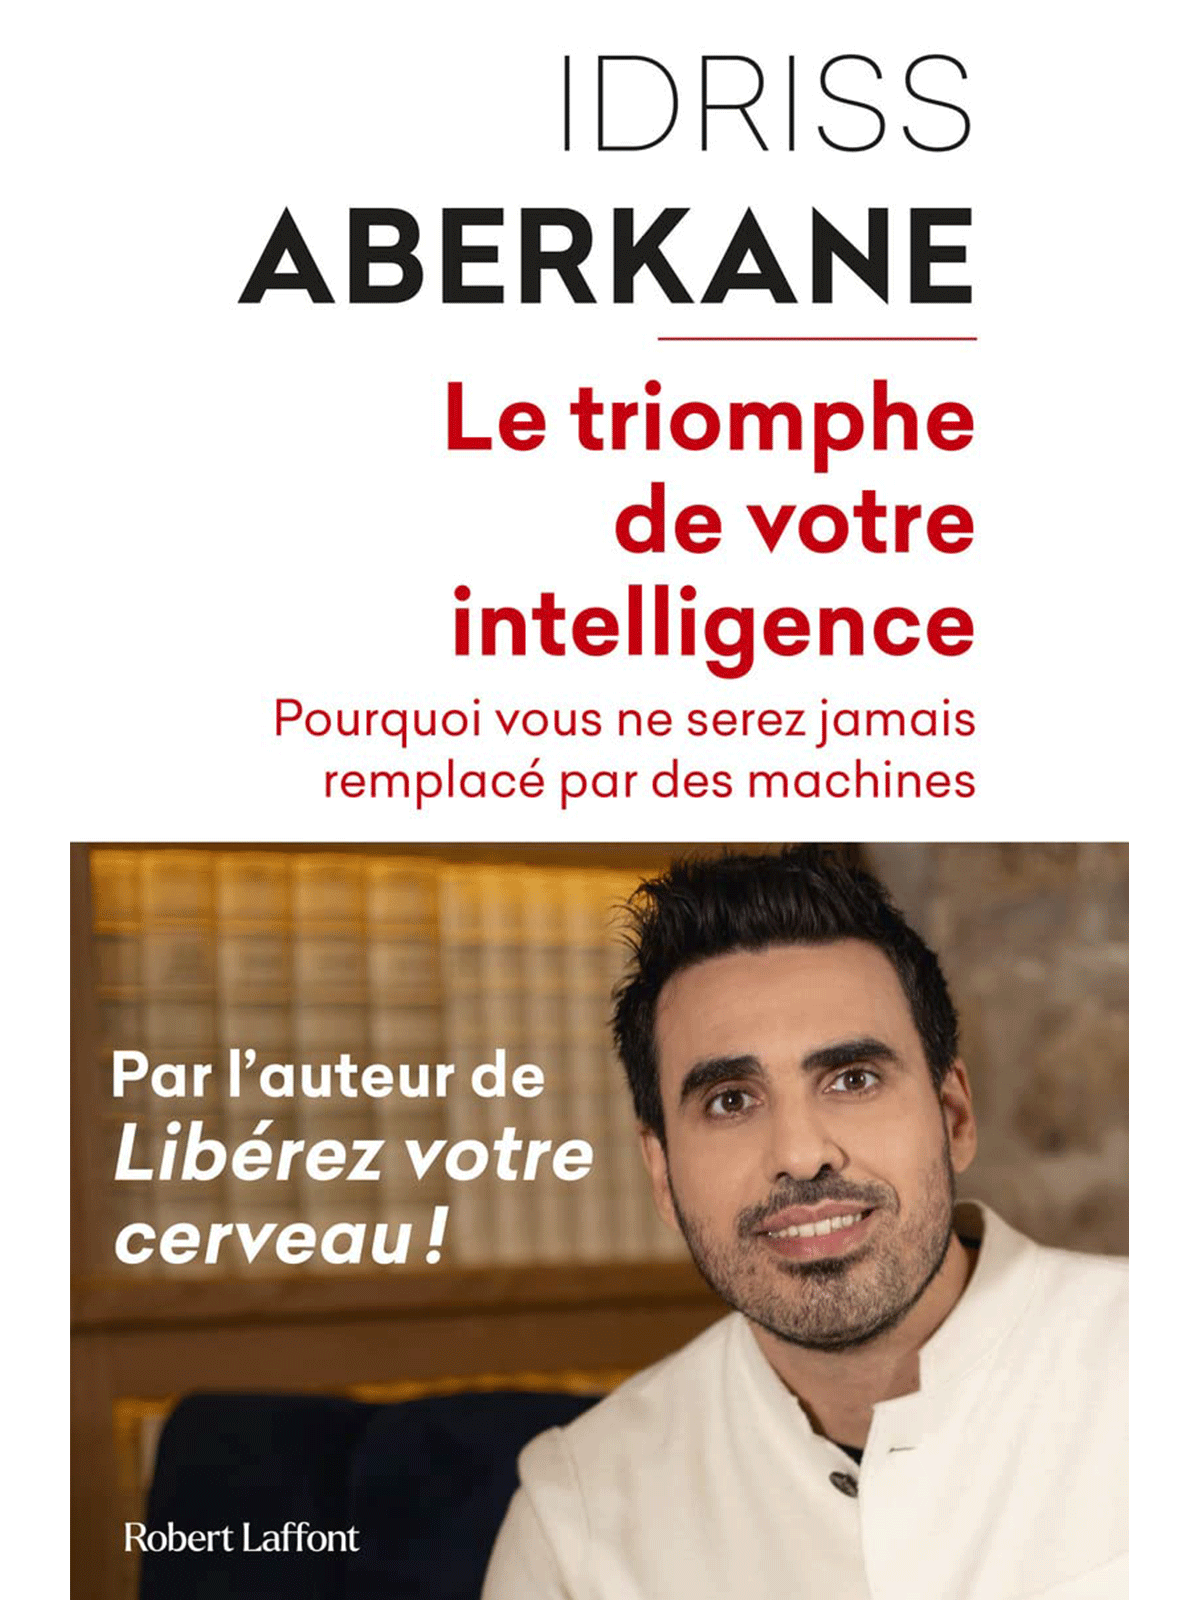 Idriss Aberkane : Le Triomphe de votre intelligence